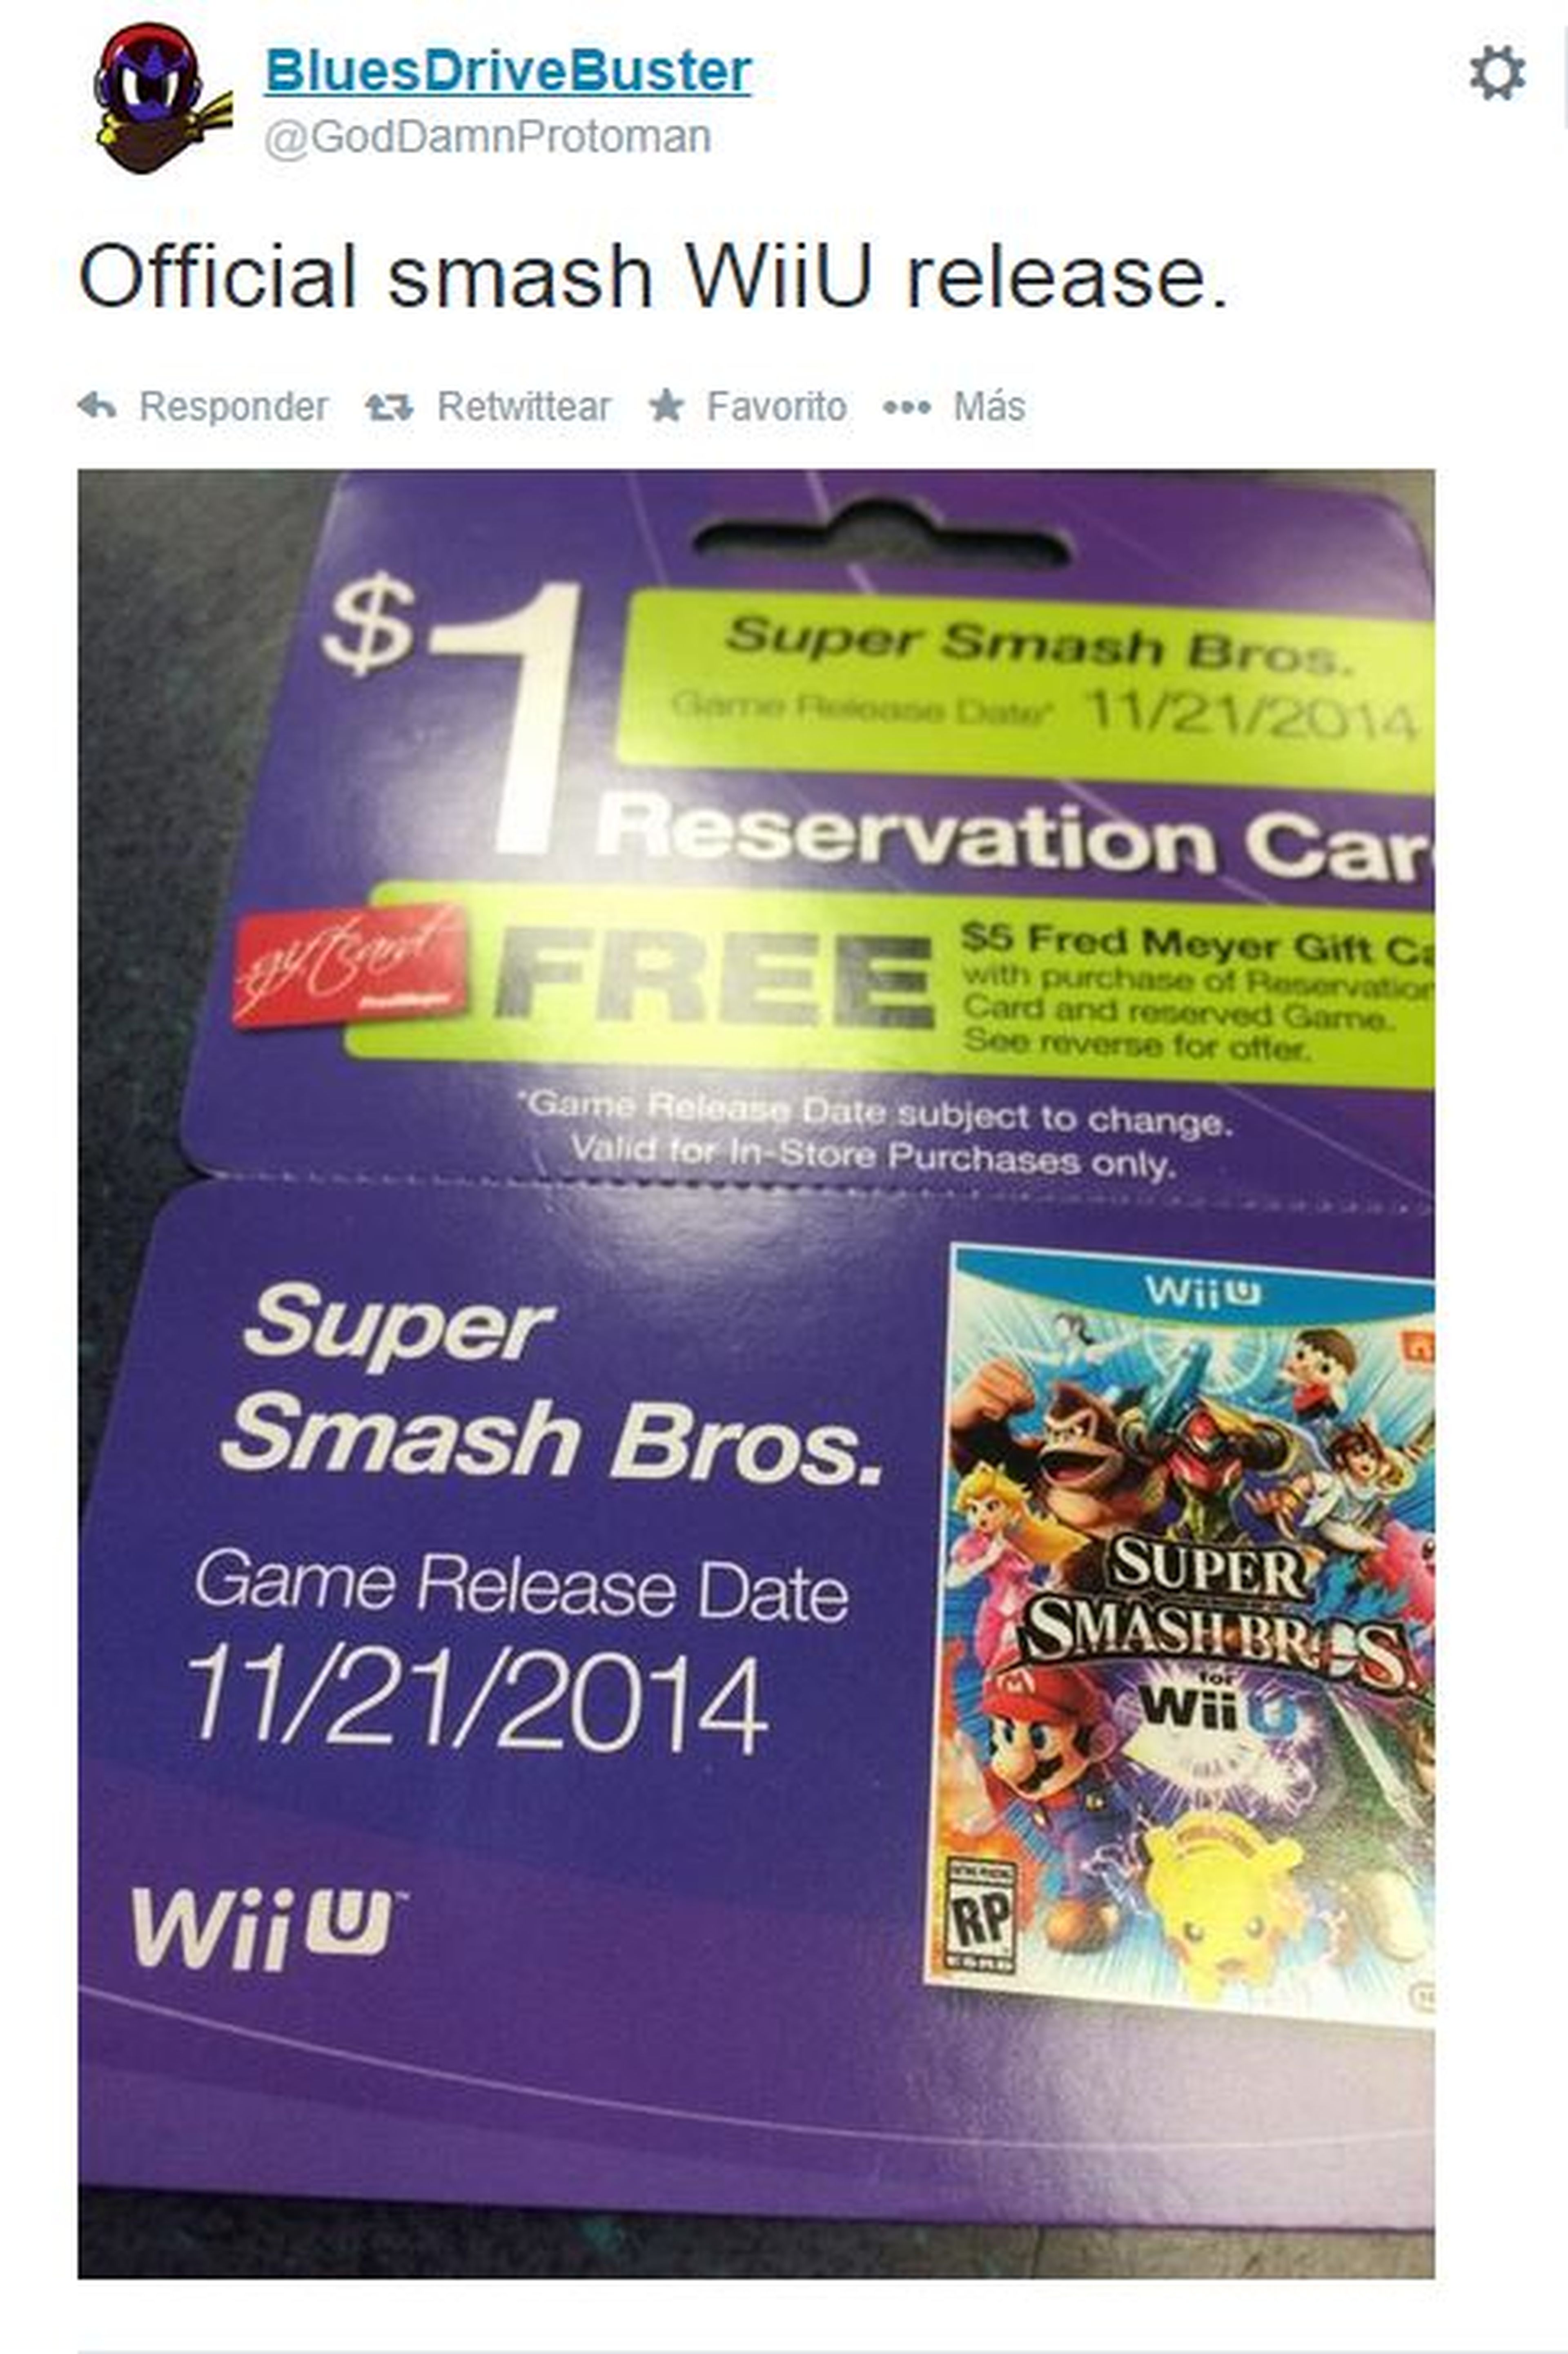 Desvelada la fecha de lanzamiento de Super Smash Bros de Wii U